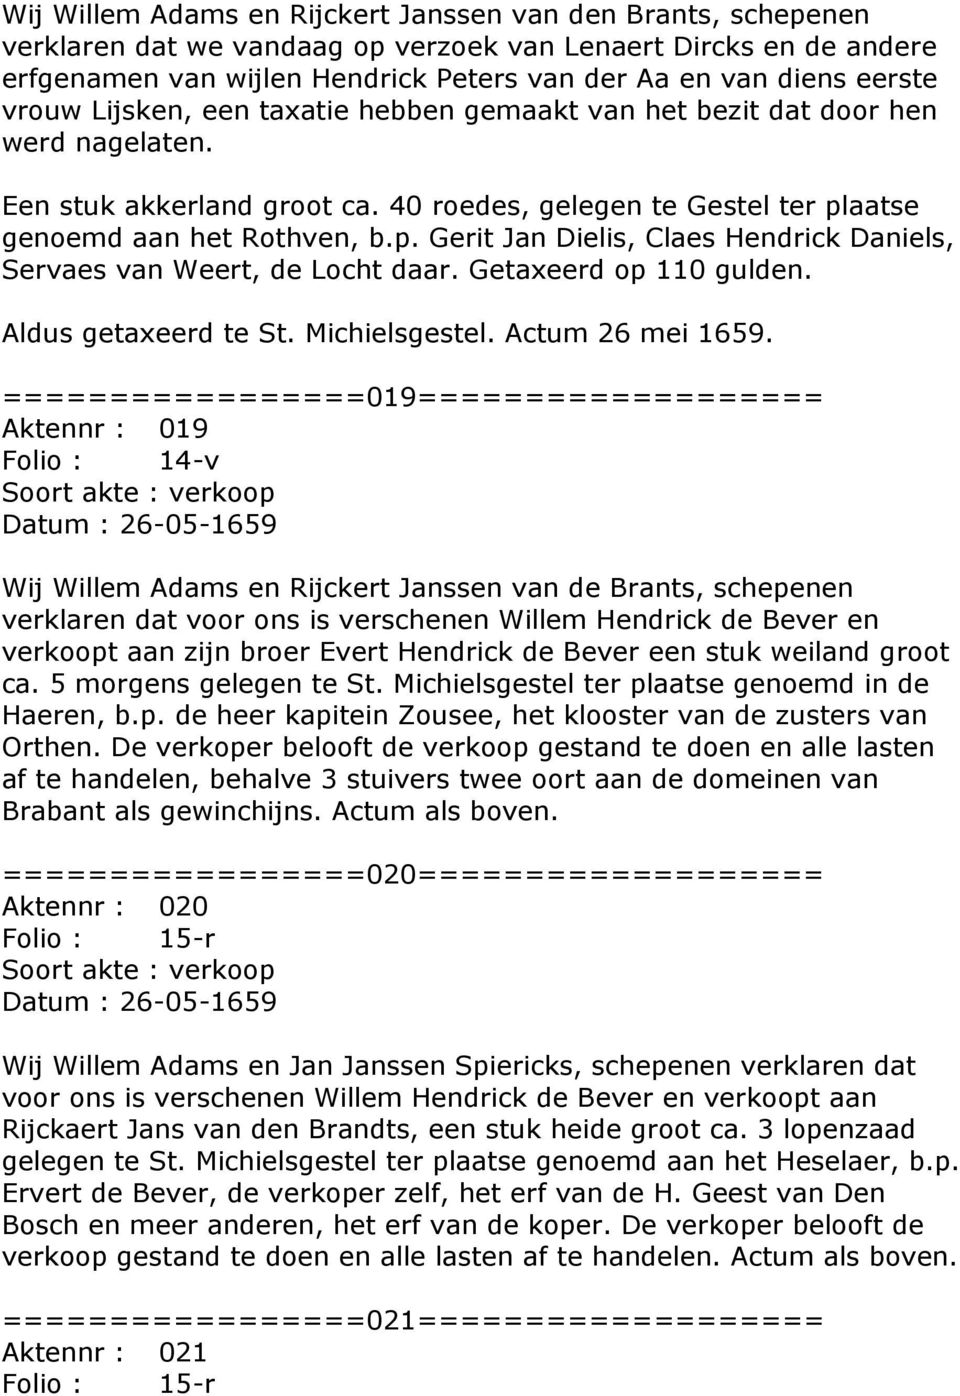 aatse genoemd aan het Rothven, b.p. Gerit Jan Dielis, Claes Hendrick Daniels, Servaes van Weert, de Locht daar. Getaxeerd op 110 gulden. Aldus getaxeerd te St. Michielsgestel. Actum 26 mei 1659.